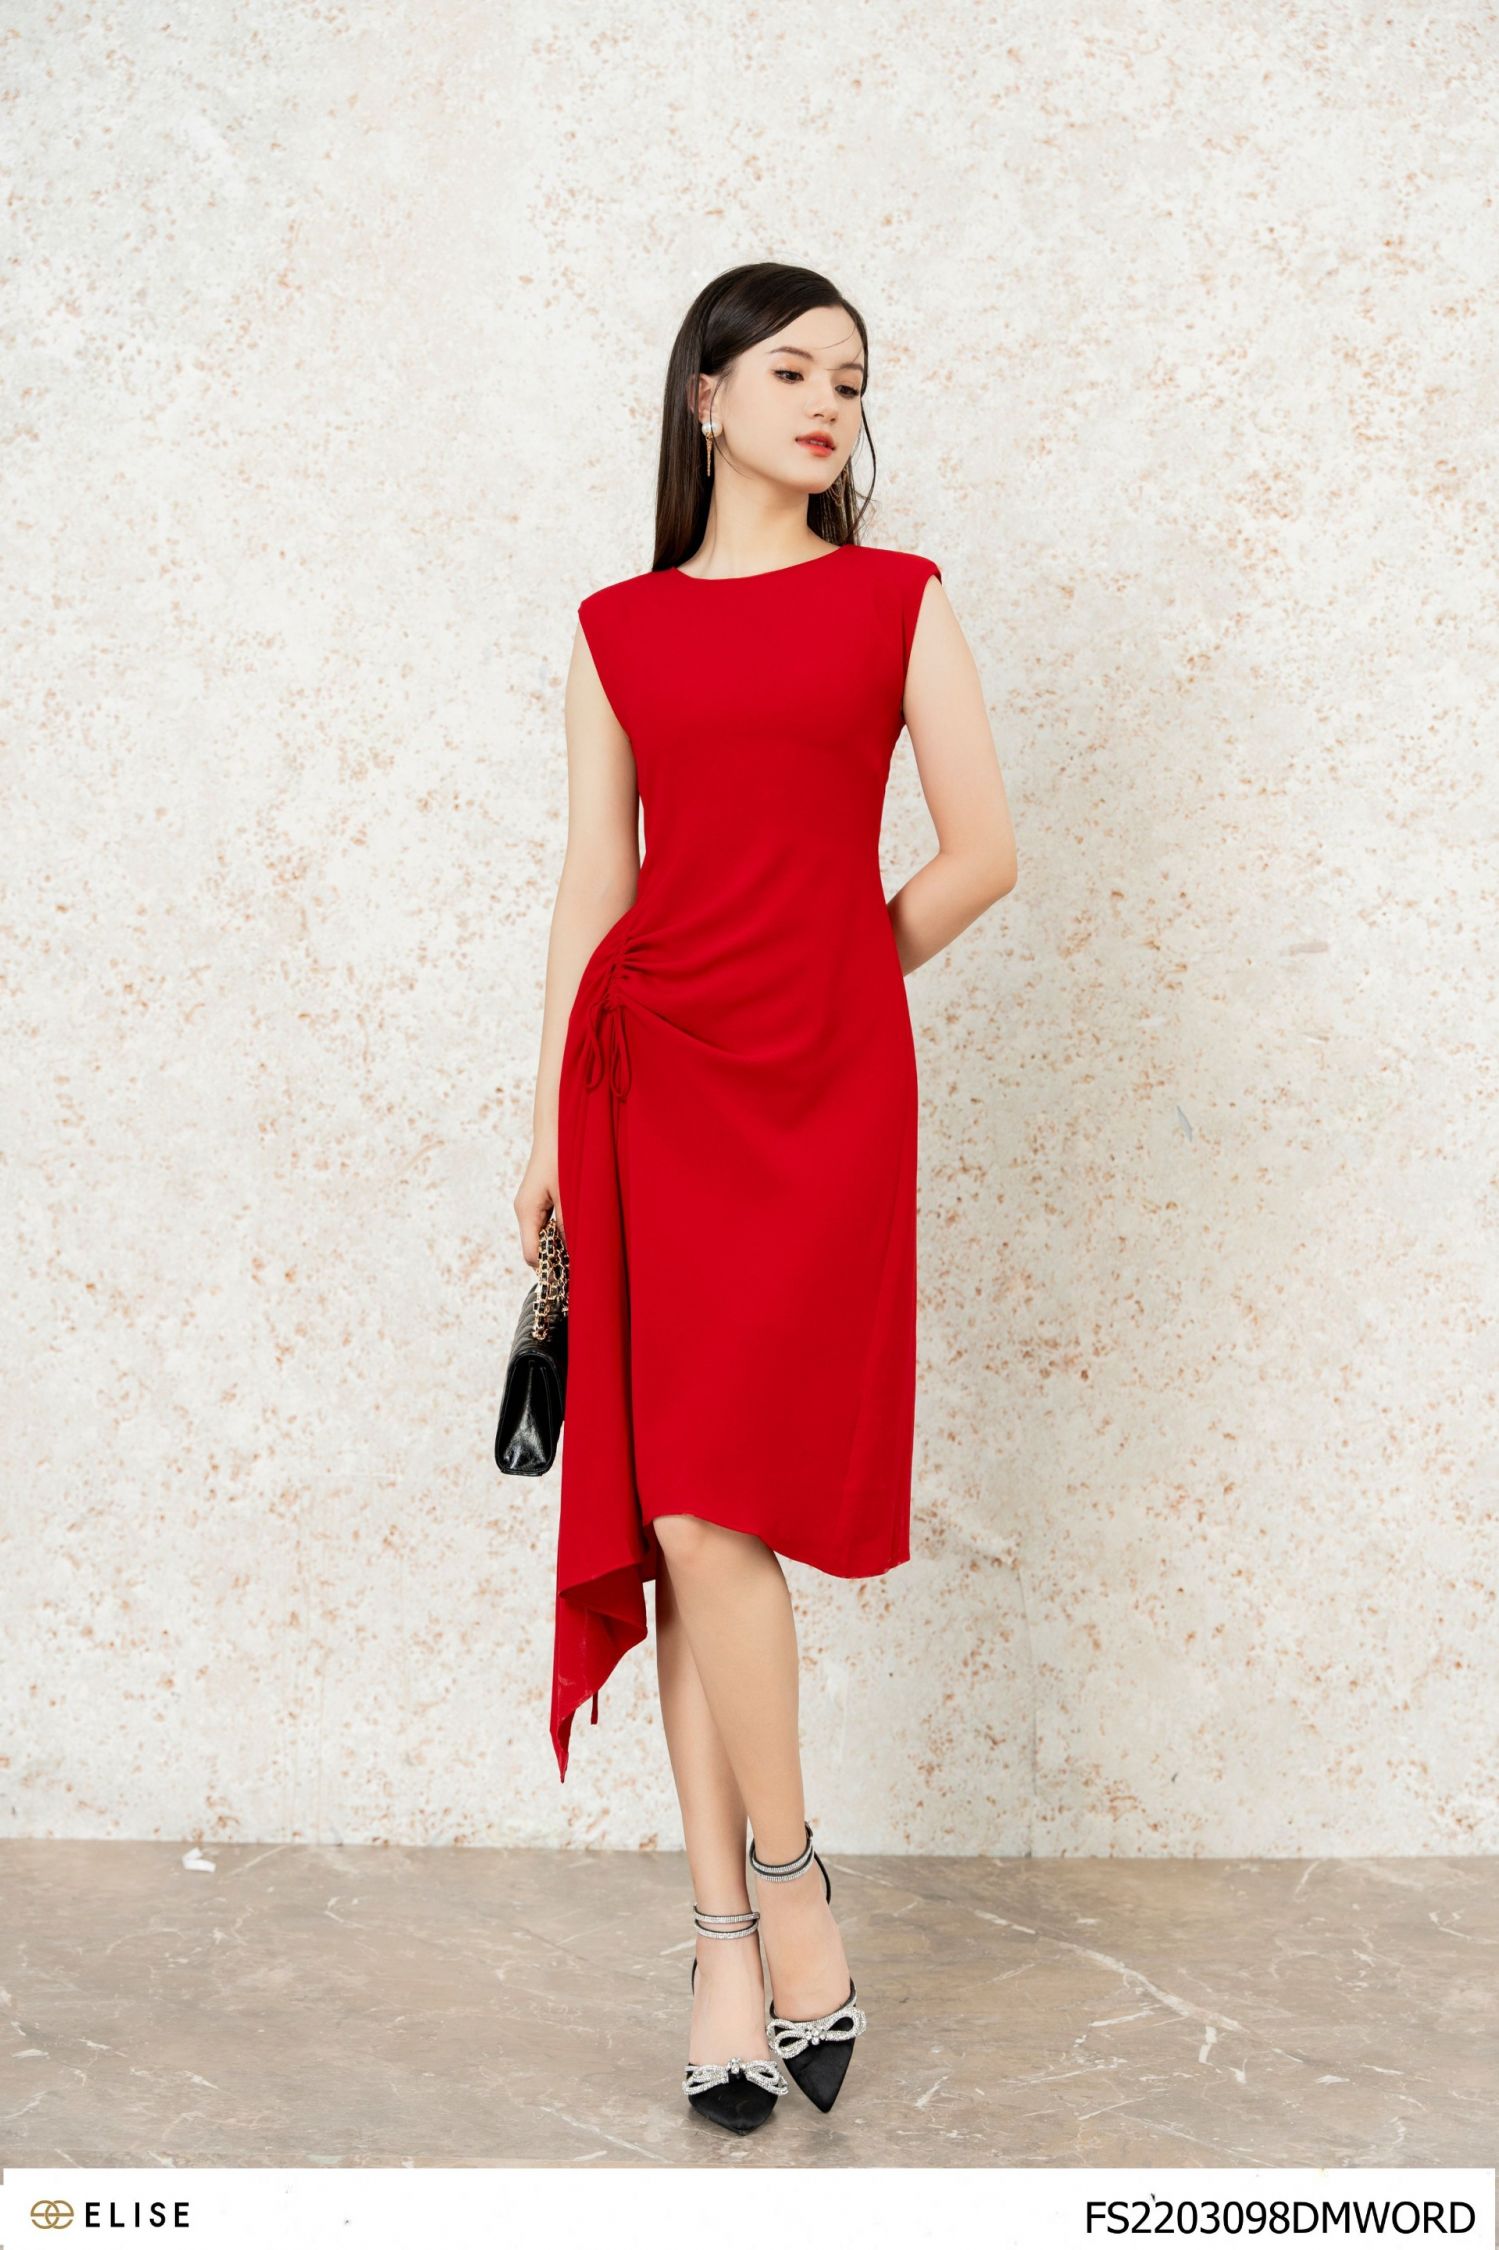 BELY | V567 - Váy đầm ôm A cổ nữ hoàng thiết kế trễ vai 3 trong 1 - Đen,  Đỏ, Trắng - Bely | Thời trang cao cấp Bely